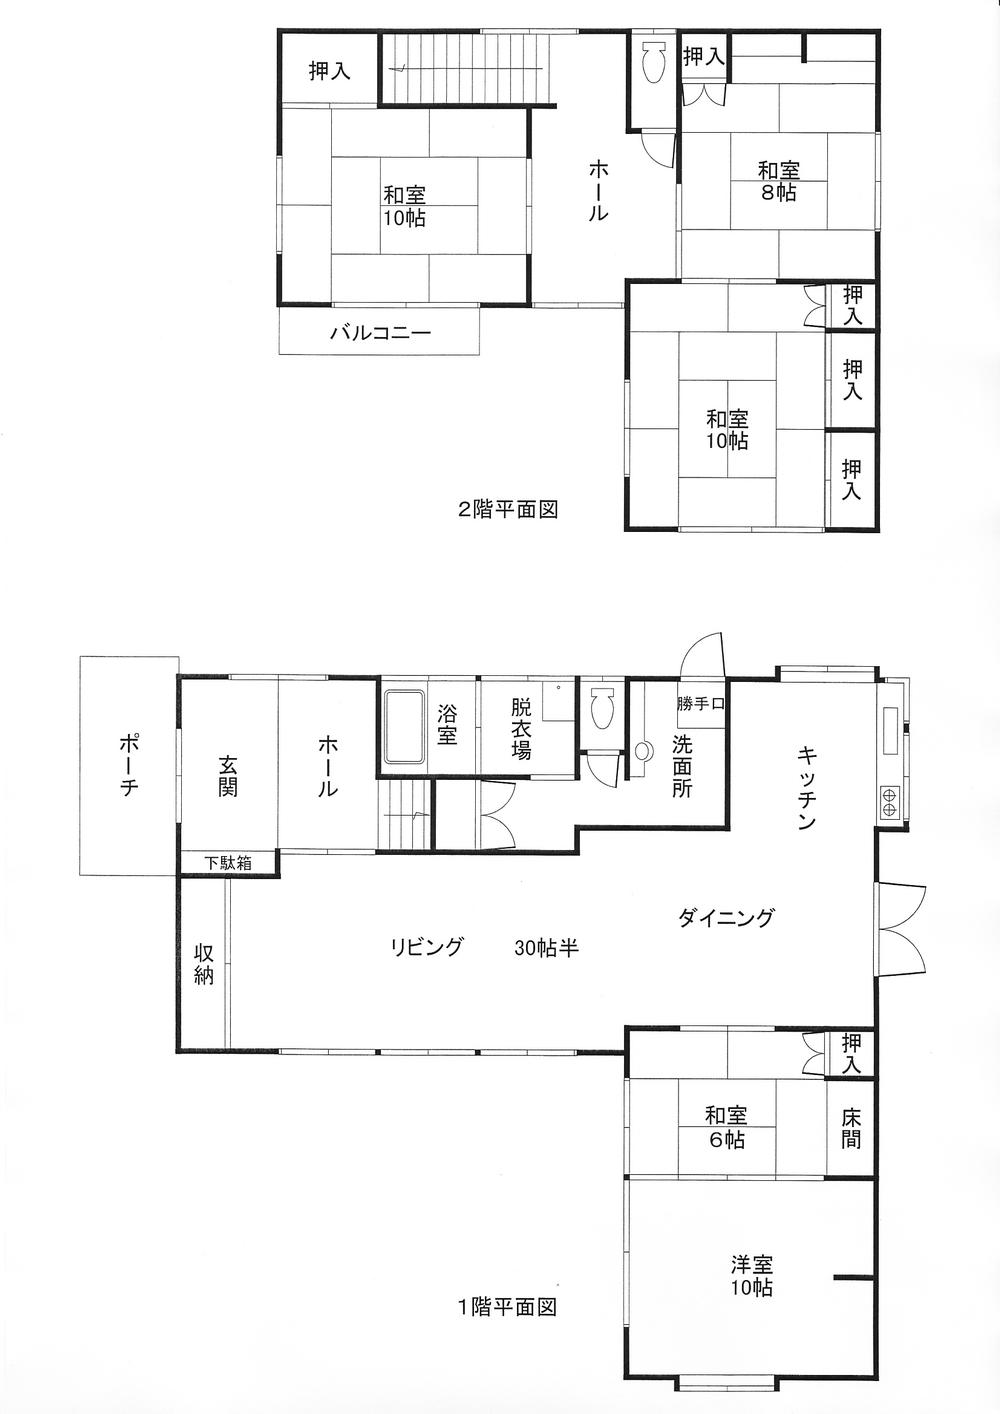 Floor plan. 25 million yen, 5LDK, Land area 542.68 sq m , Building area 208.49 sq m